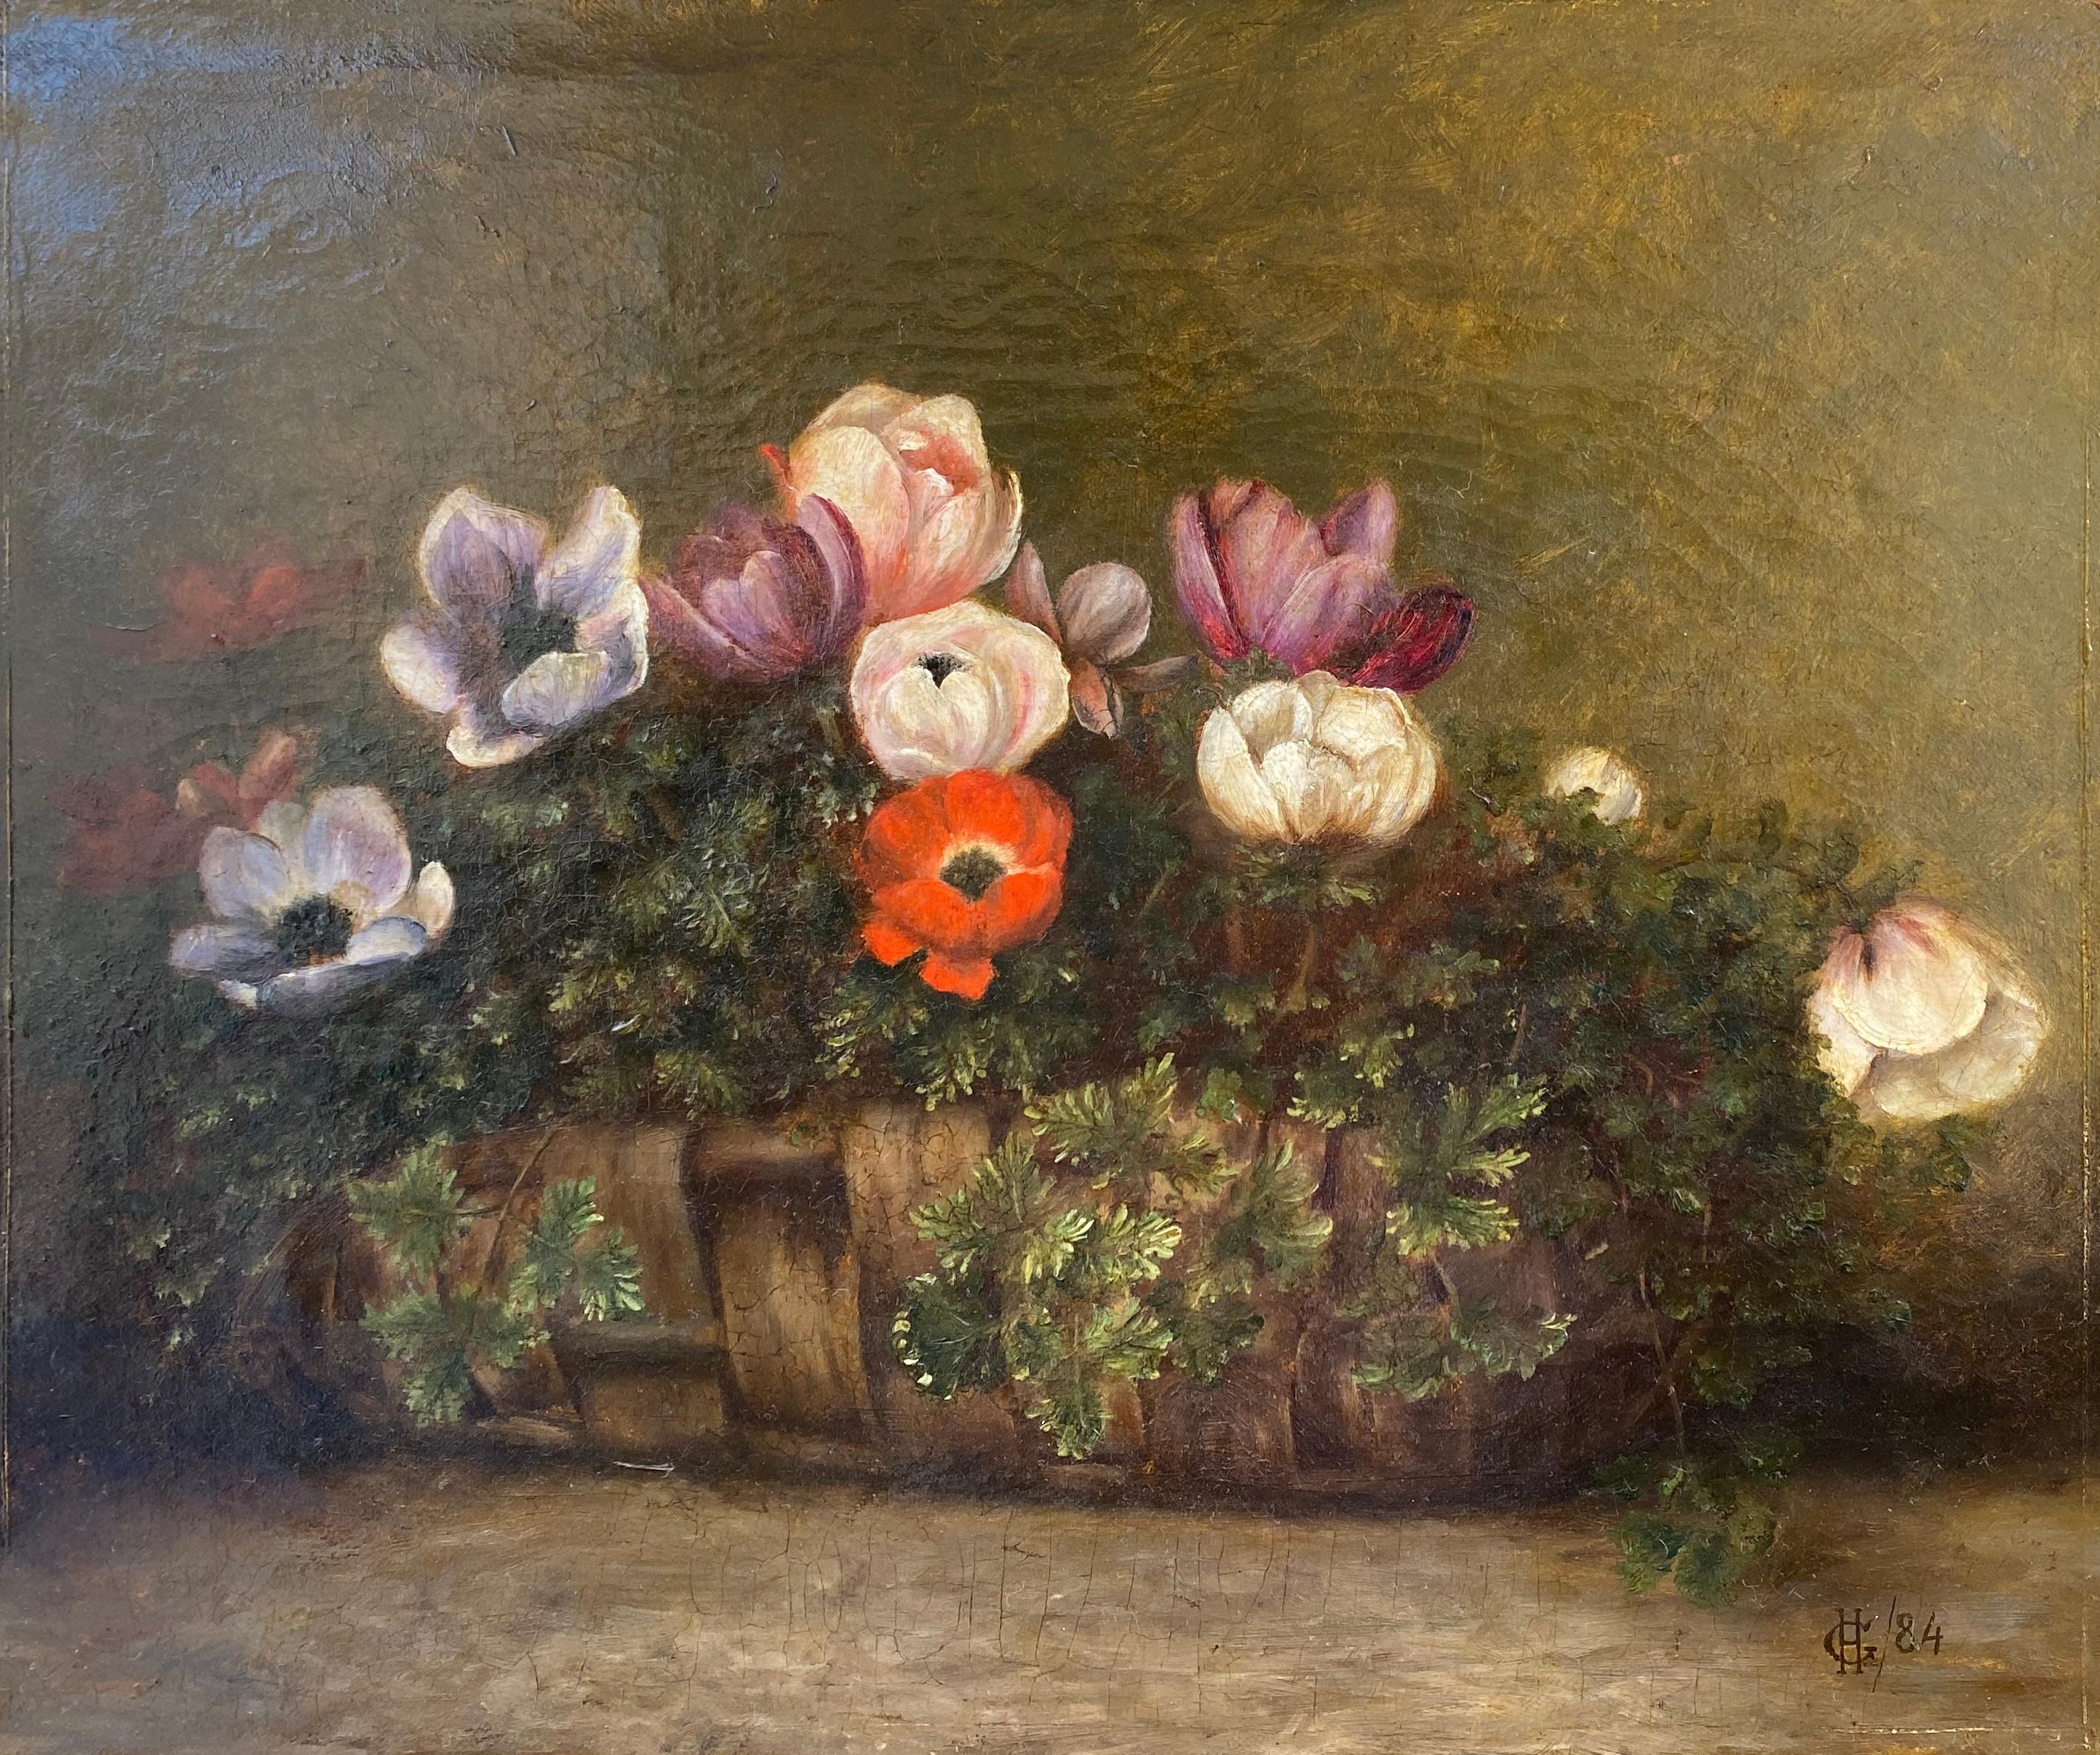 Korb aus Korbweide mit Anhängern, ein bescheidenes Festliches Geschenk, Blumenstillleben aus dem 19. Jahrhundert – Painting von Unknown